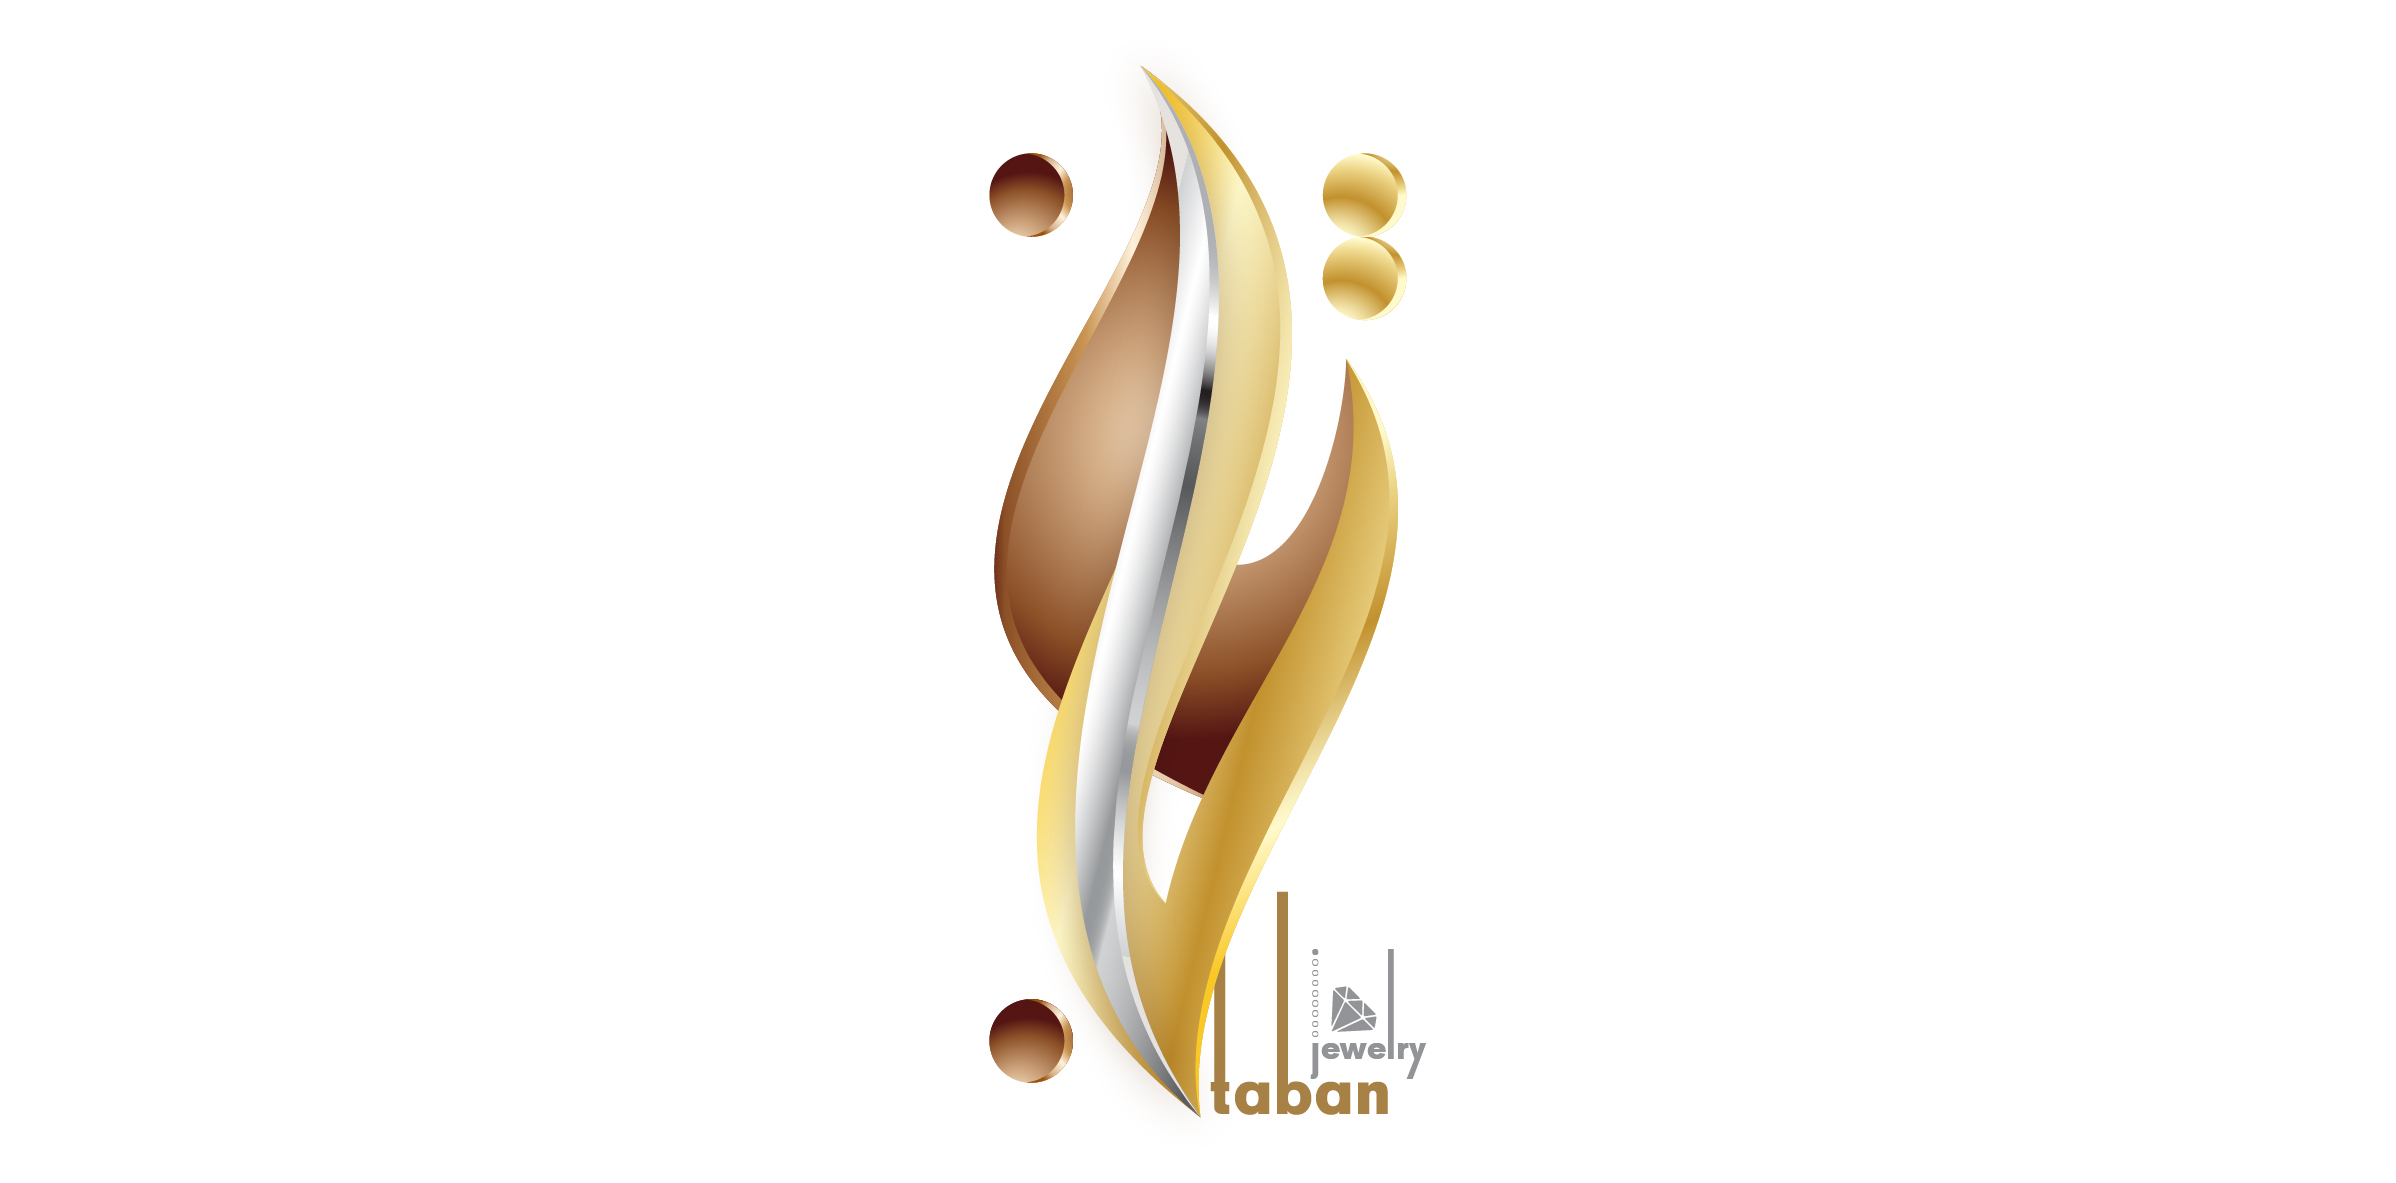 Taban Jwelery